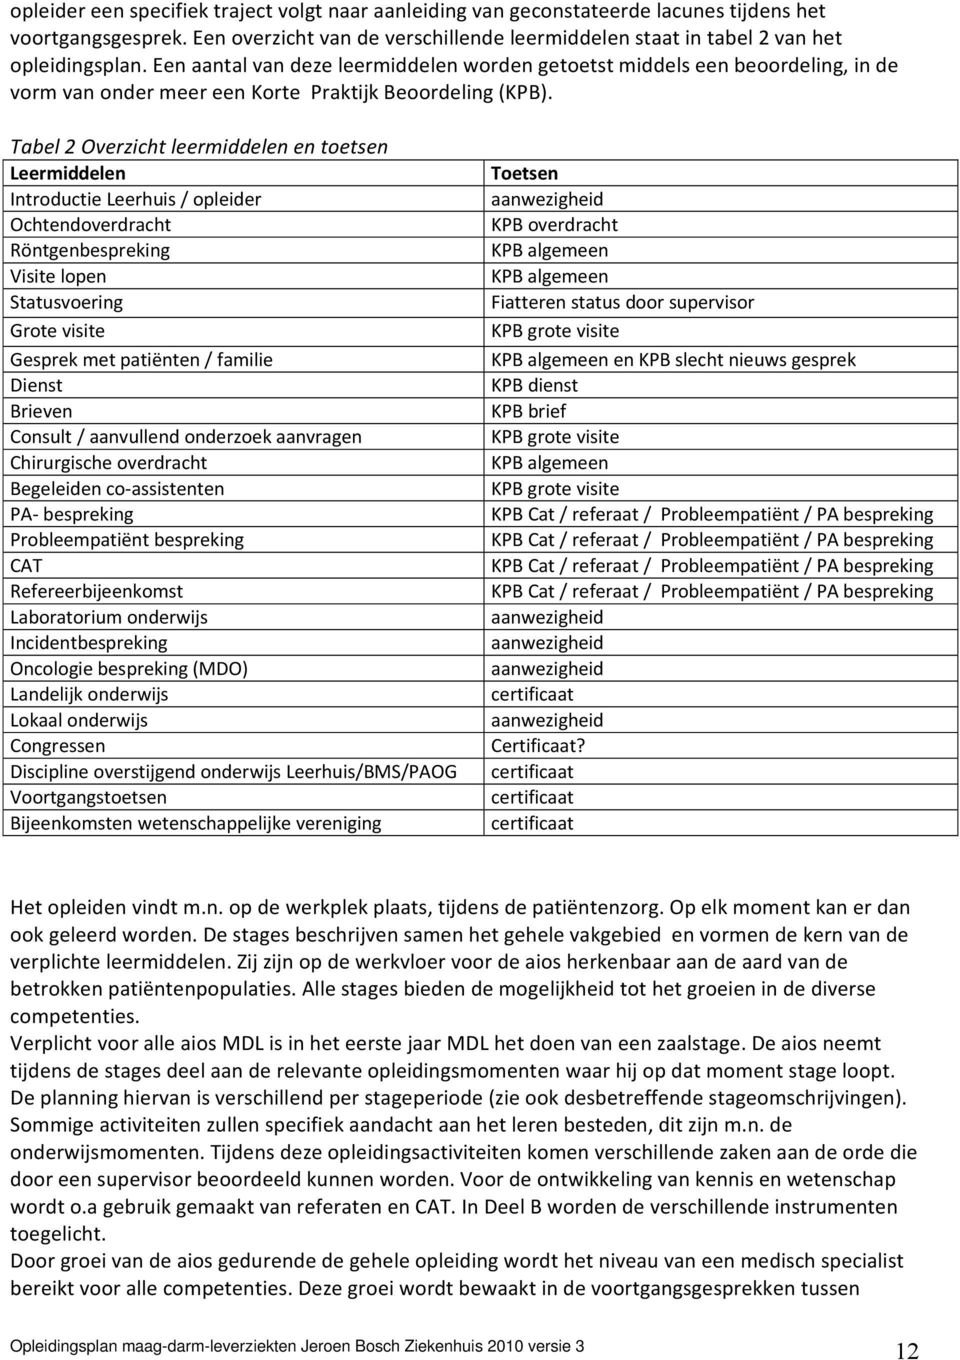 Tabel 2 Overzicht leermiddelen en toetsen Leermiddelen Introductie Leerhuis / opleider Ochtendoverdracht Röntgenbespreking Visite lopen Statusvoering Grote visite Gesprek met patiënten / familie